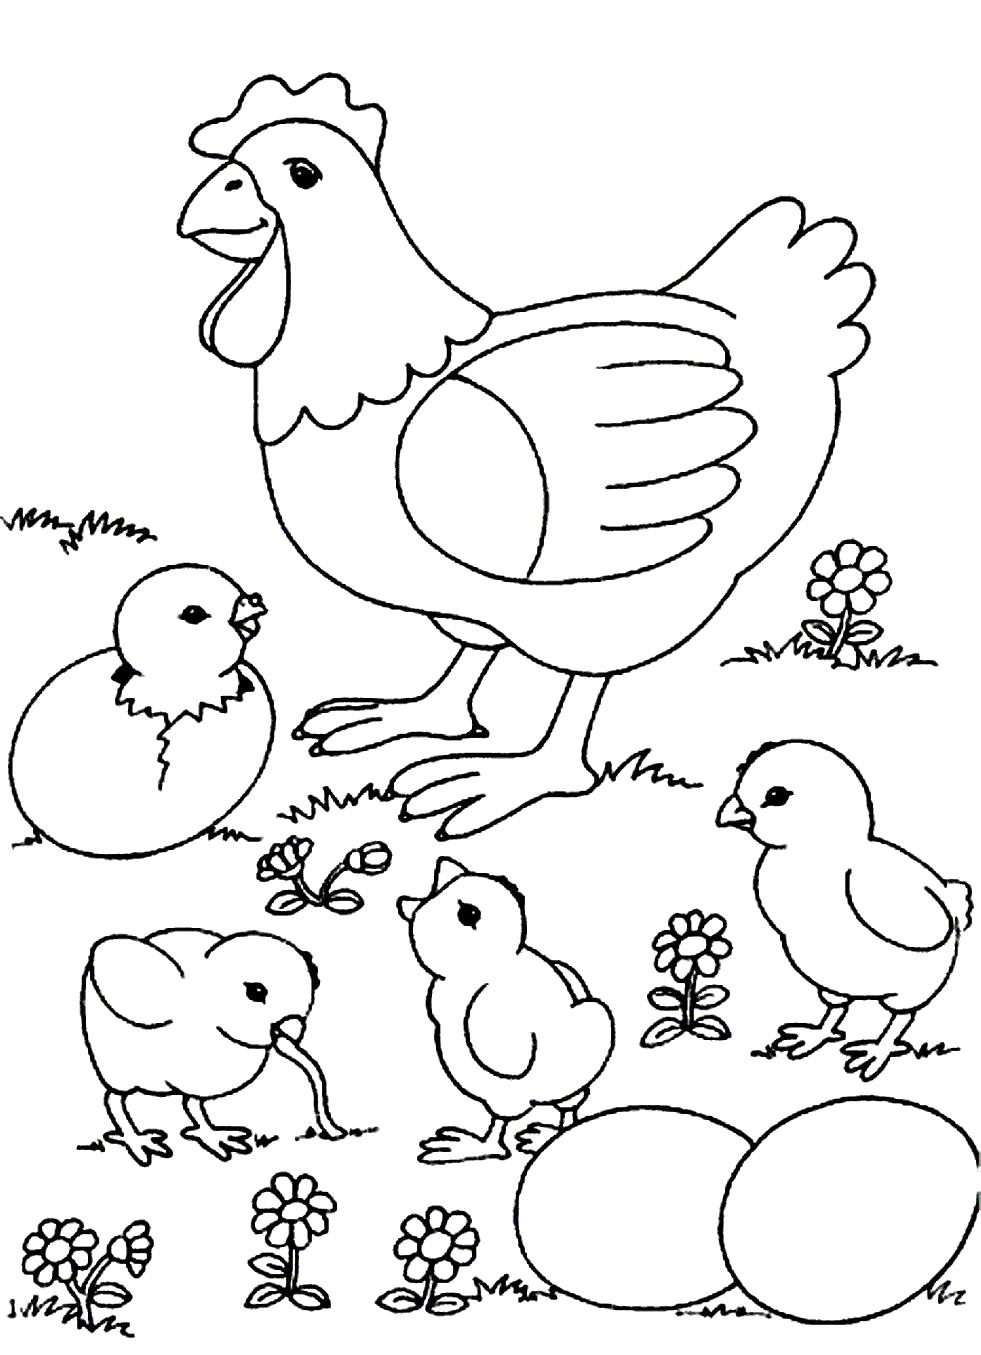 Раскраска Мама и цыплята. Скачать Курица, Цыплята.  Распечатать Домашние животные